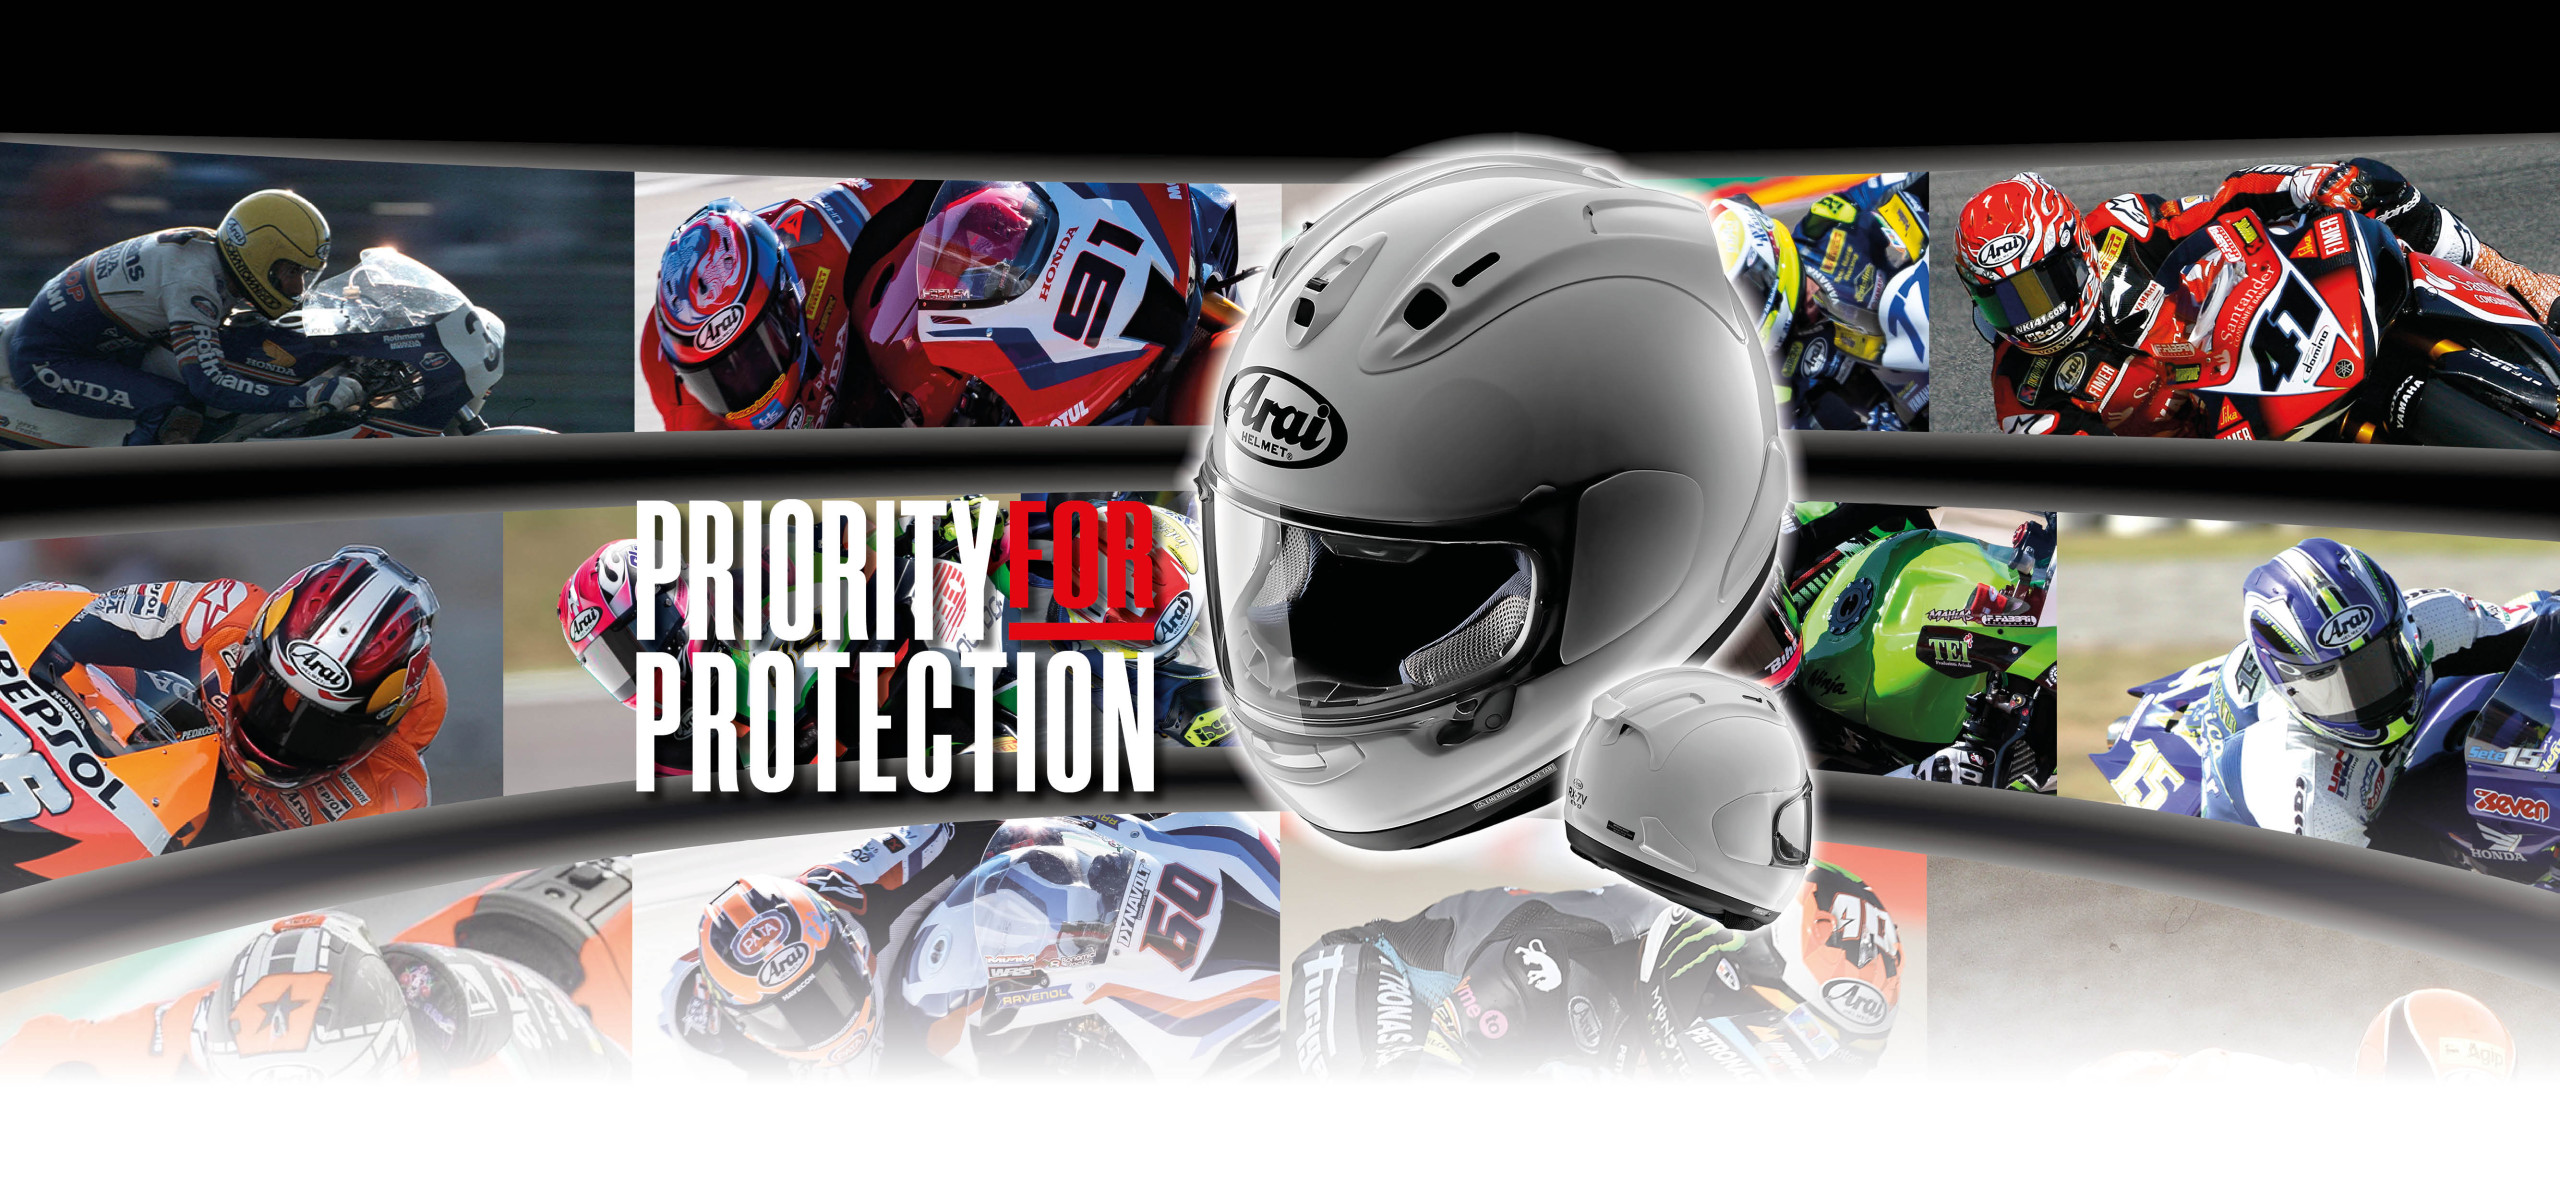  Casco de motocicleta de fibra de carbono con intercomunicador  Bluetooth integrado aprobado por DOT ECE casco ligero de doble visera para  motocicleta, casco de carreras de scooter para hombres y mujeres